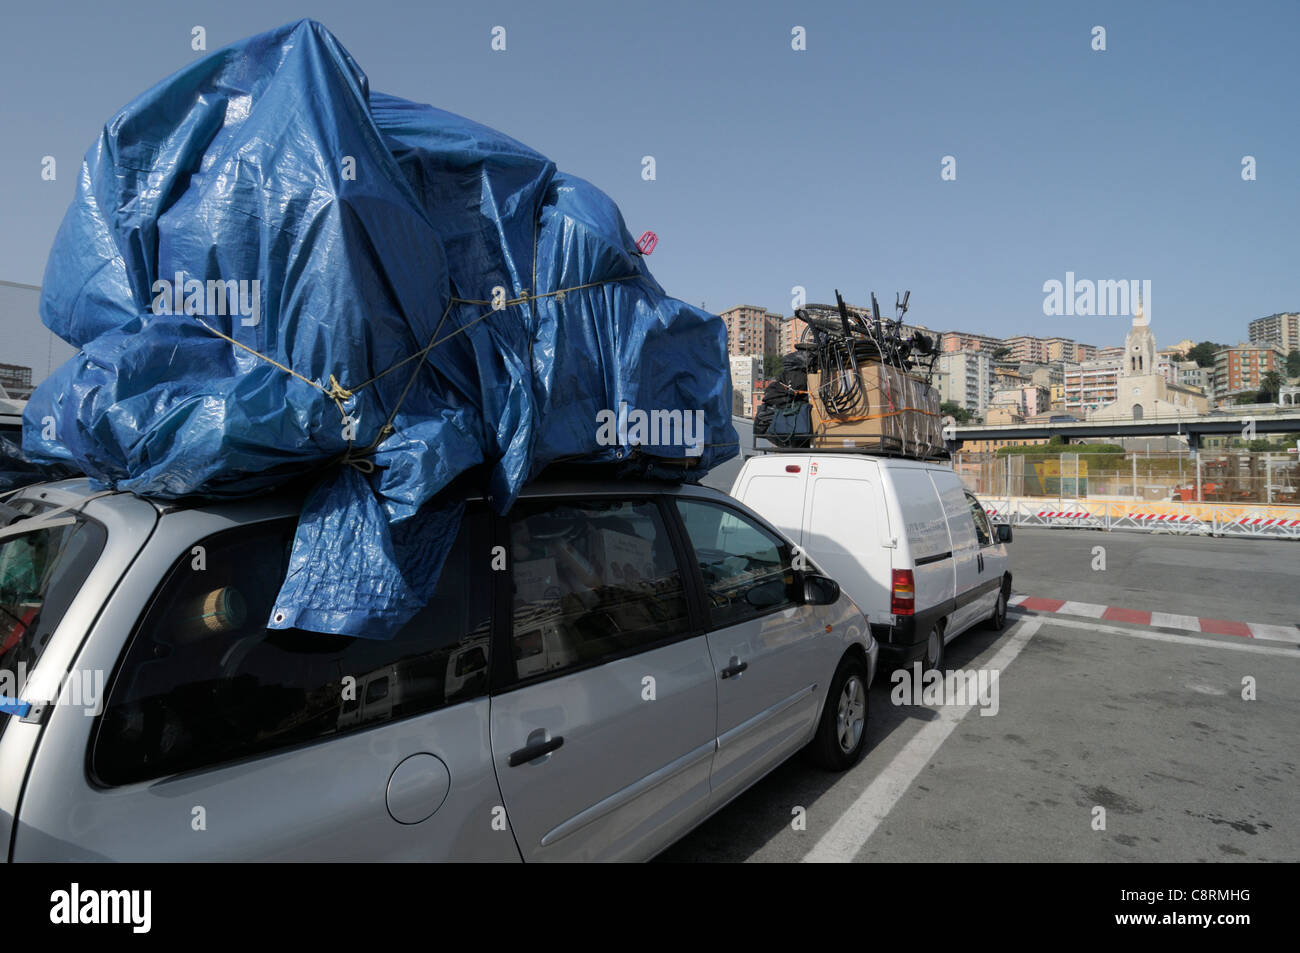 Europa, Italien, Genua. Überladene Fahrzeuge im Hafen von Genua warten auf die Fähre von Genua nach Tunis in Tunesien. Stockfoto